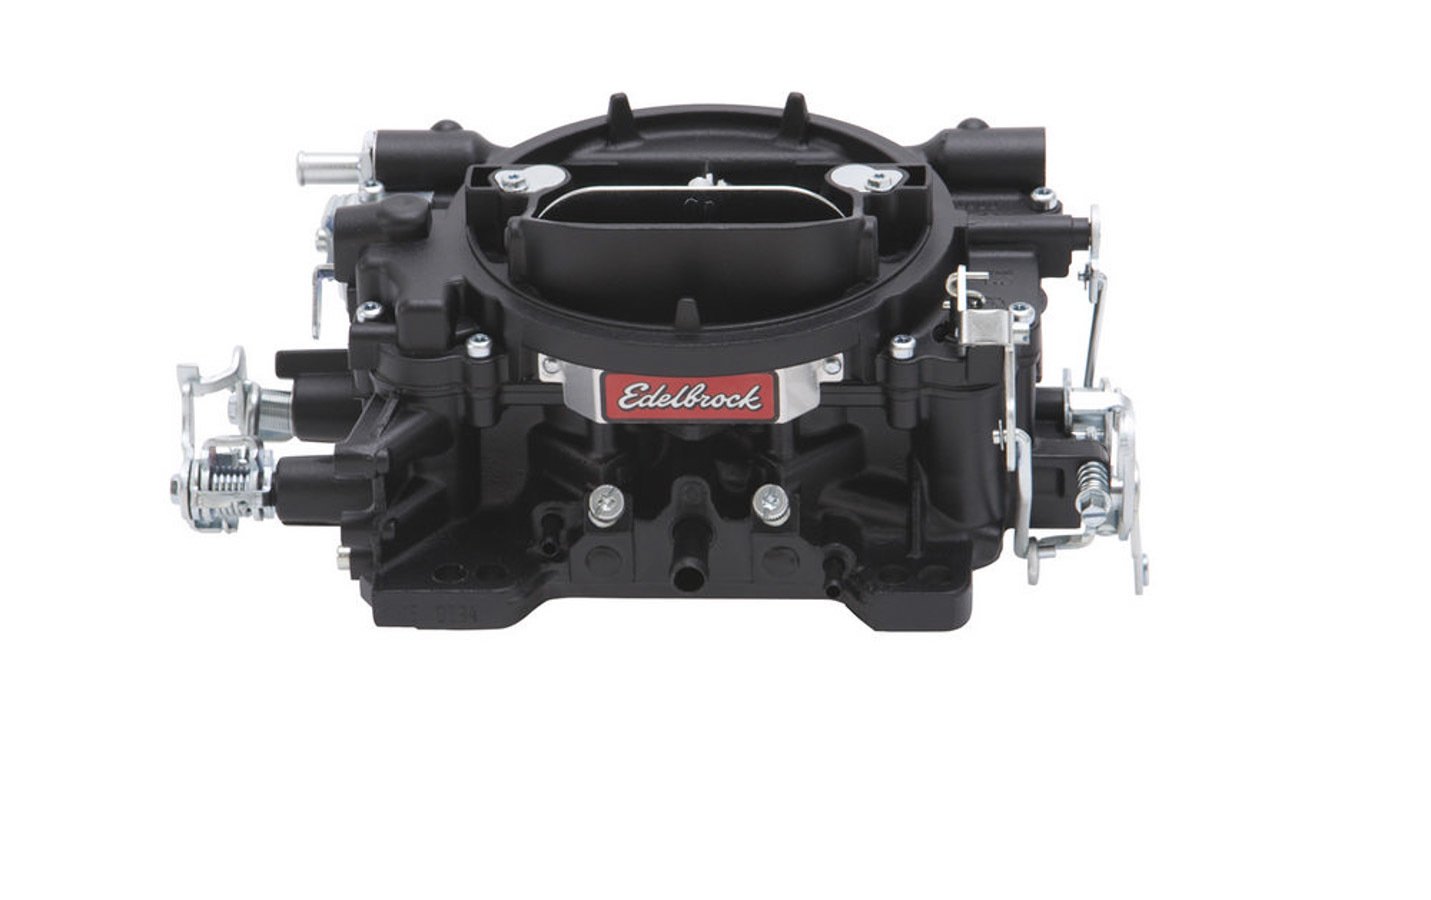 Carburetor, Performer Series, 4-Barrel, 600 CFM, Manual Choke, Black Finish